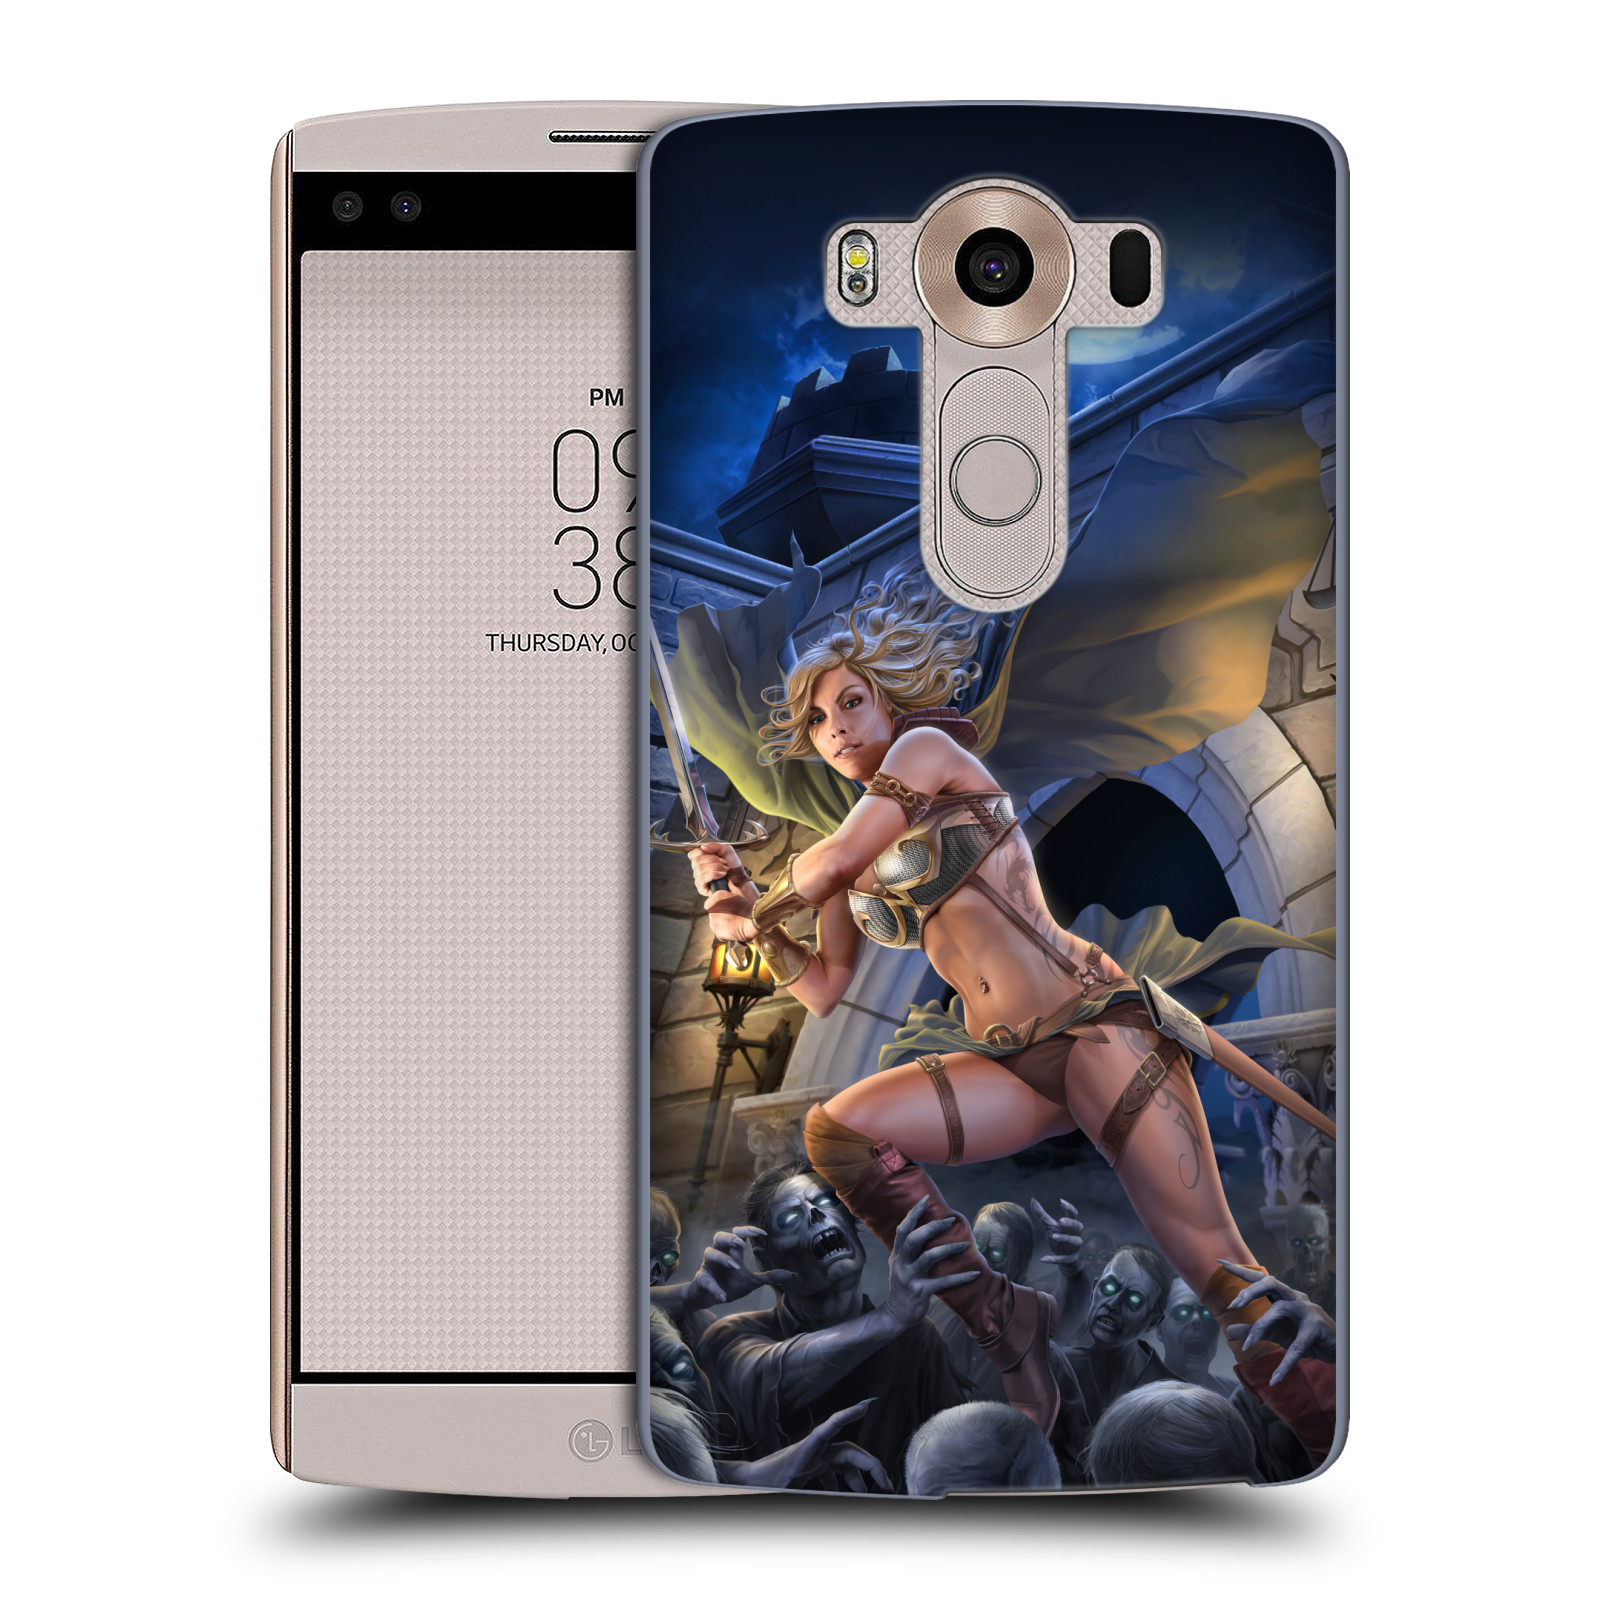 Pouzdro na mobil LG V10 - HEAD CASE - Fantasy kresby Tom Wood - Princezna bojovnice a zombies